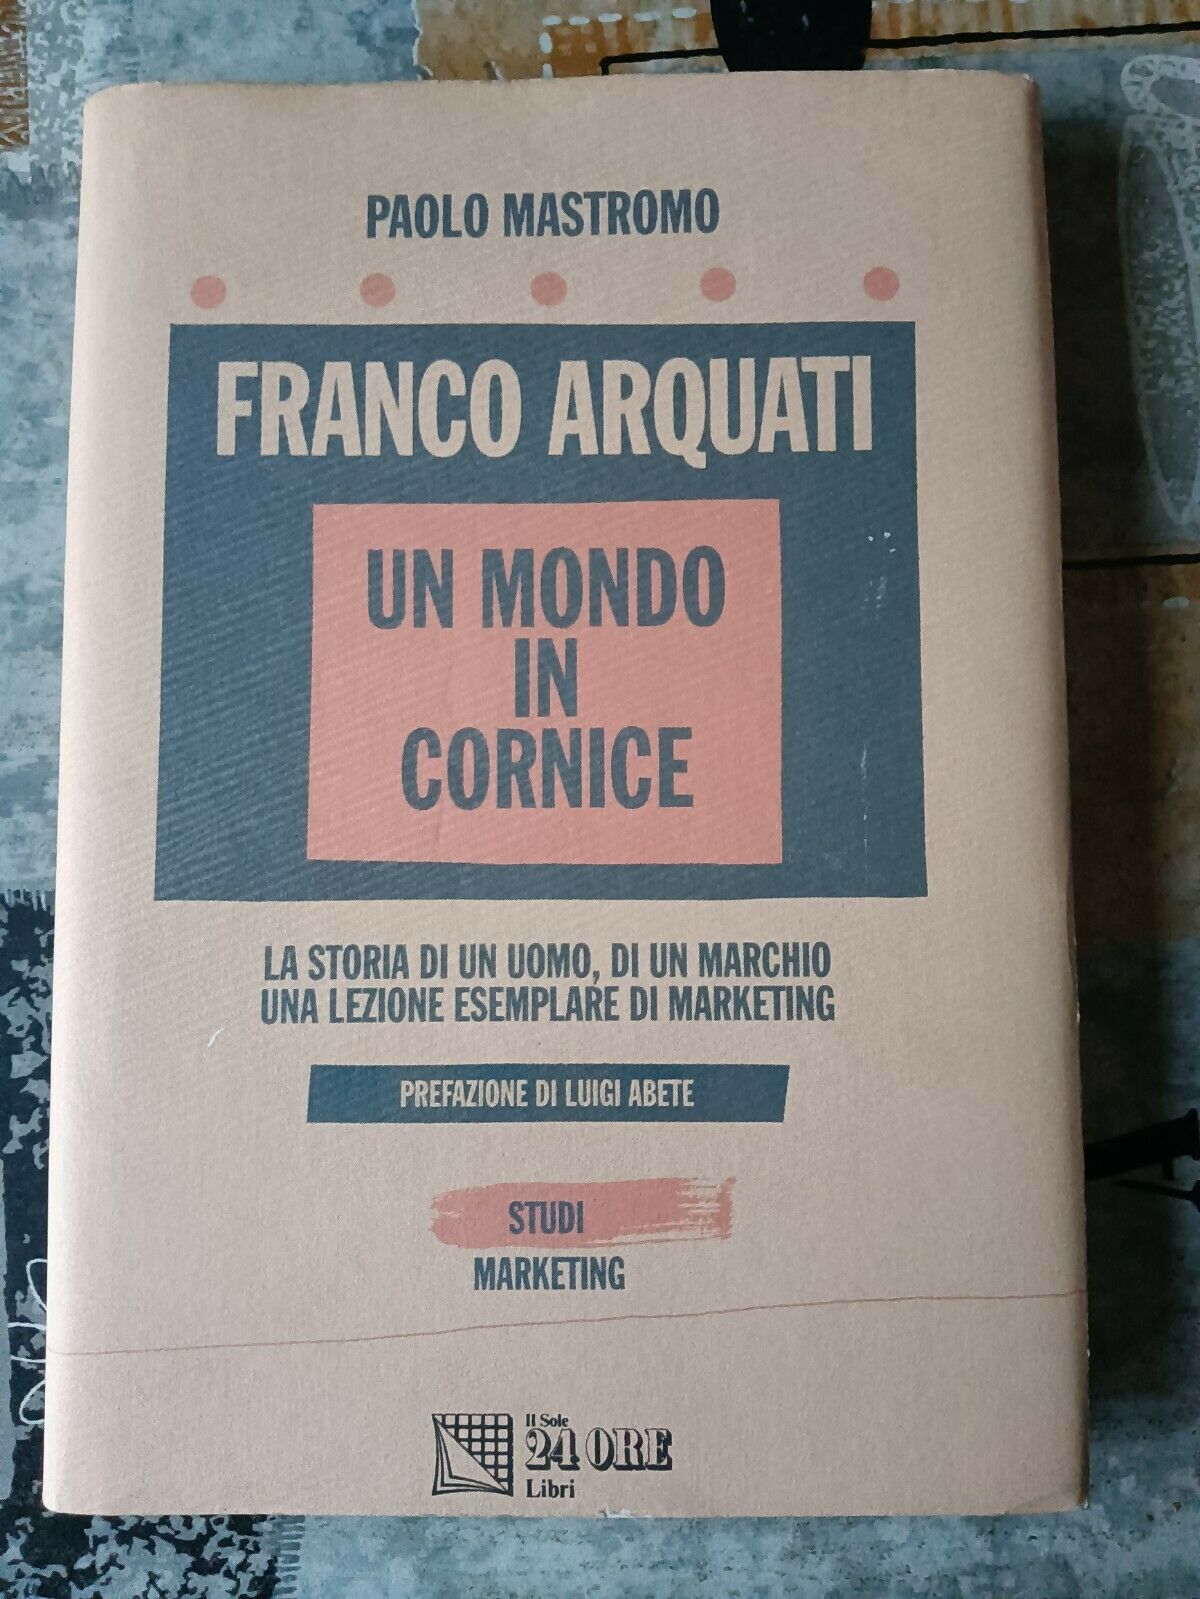 FRANCO ARQUATI UN MONDO IN CORNICE | PAOLO MASTROMO